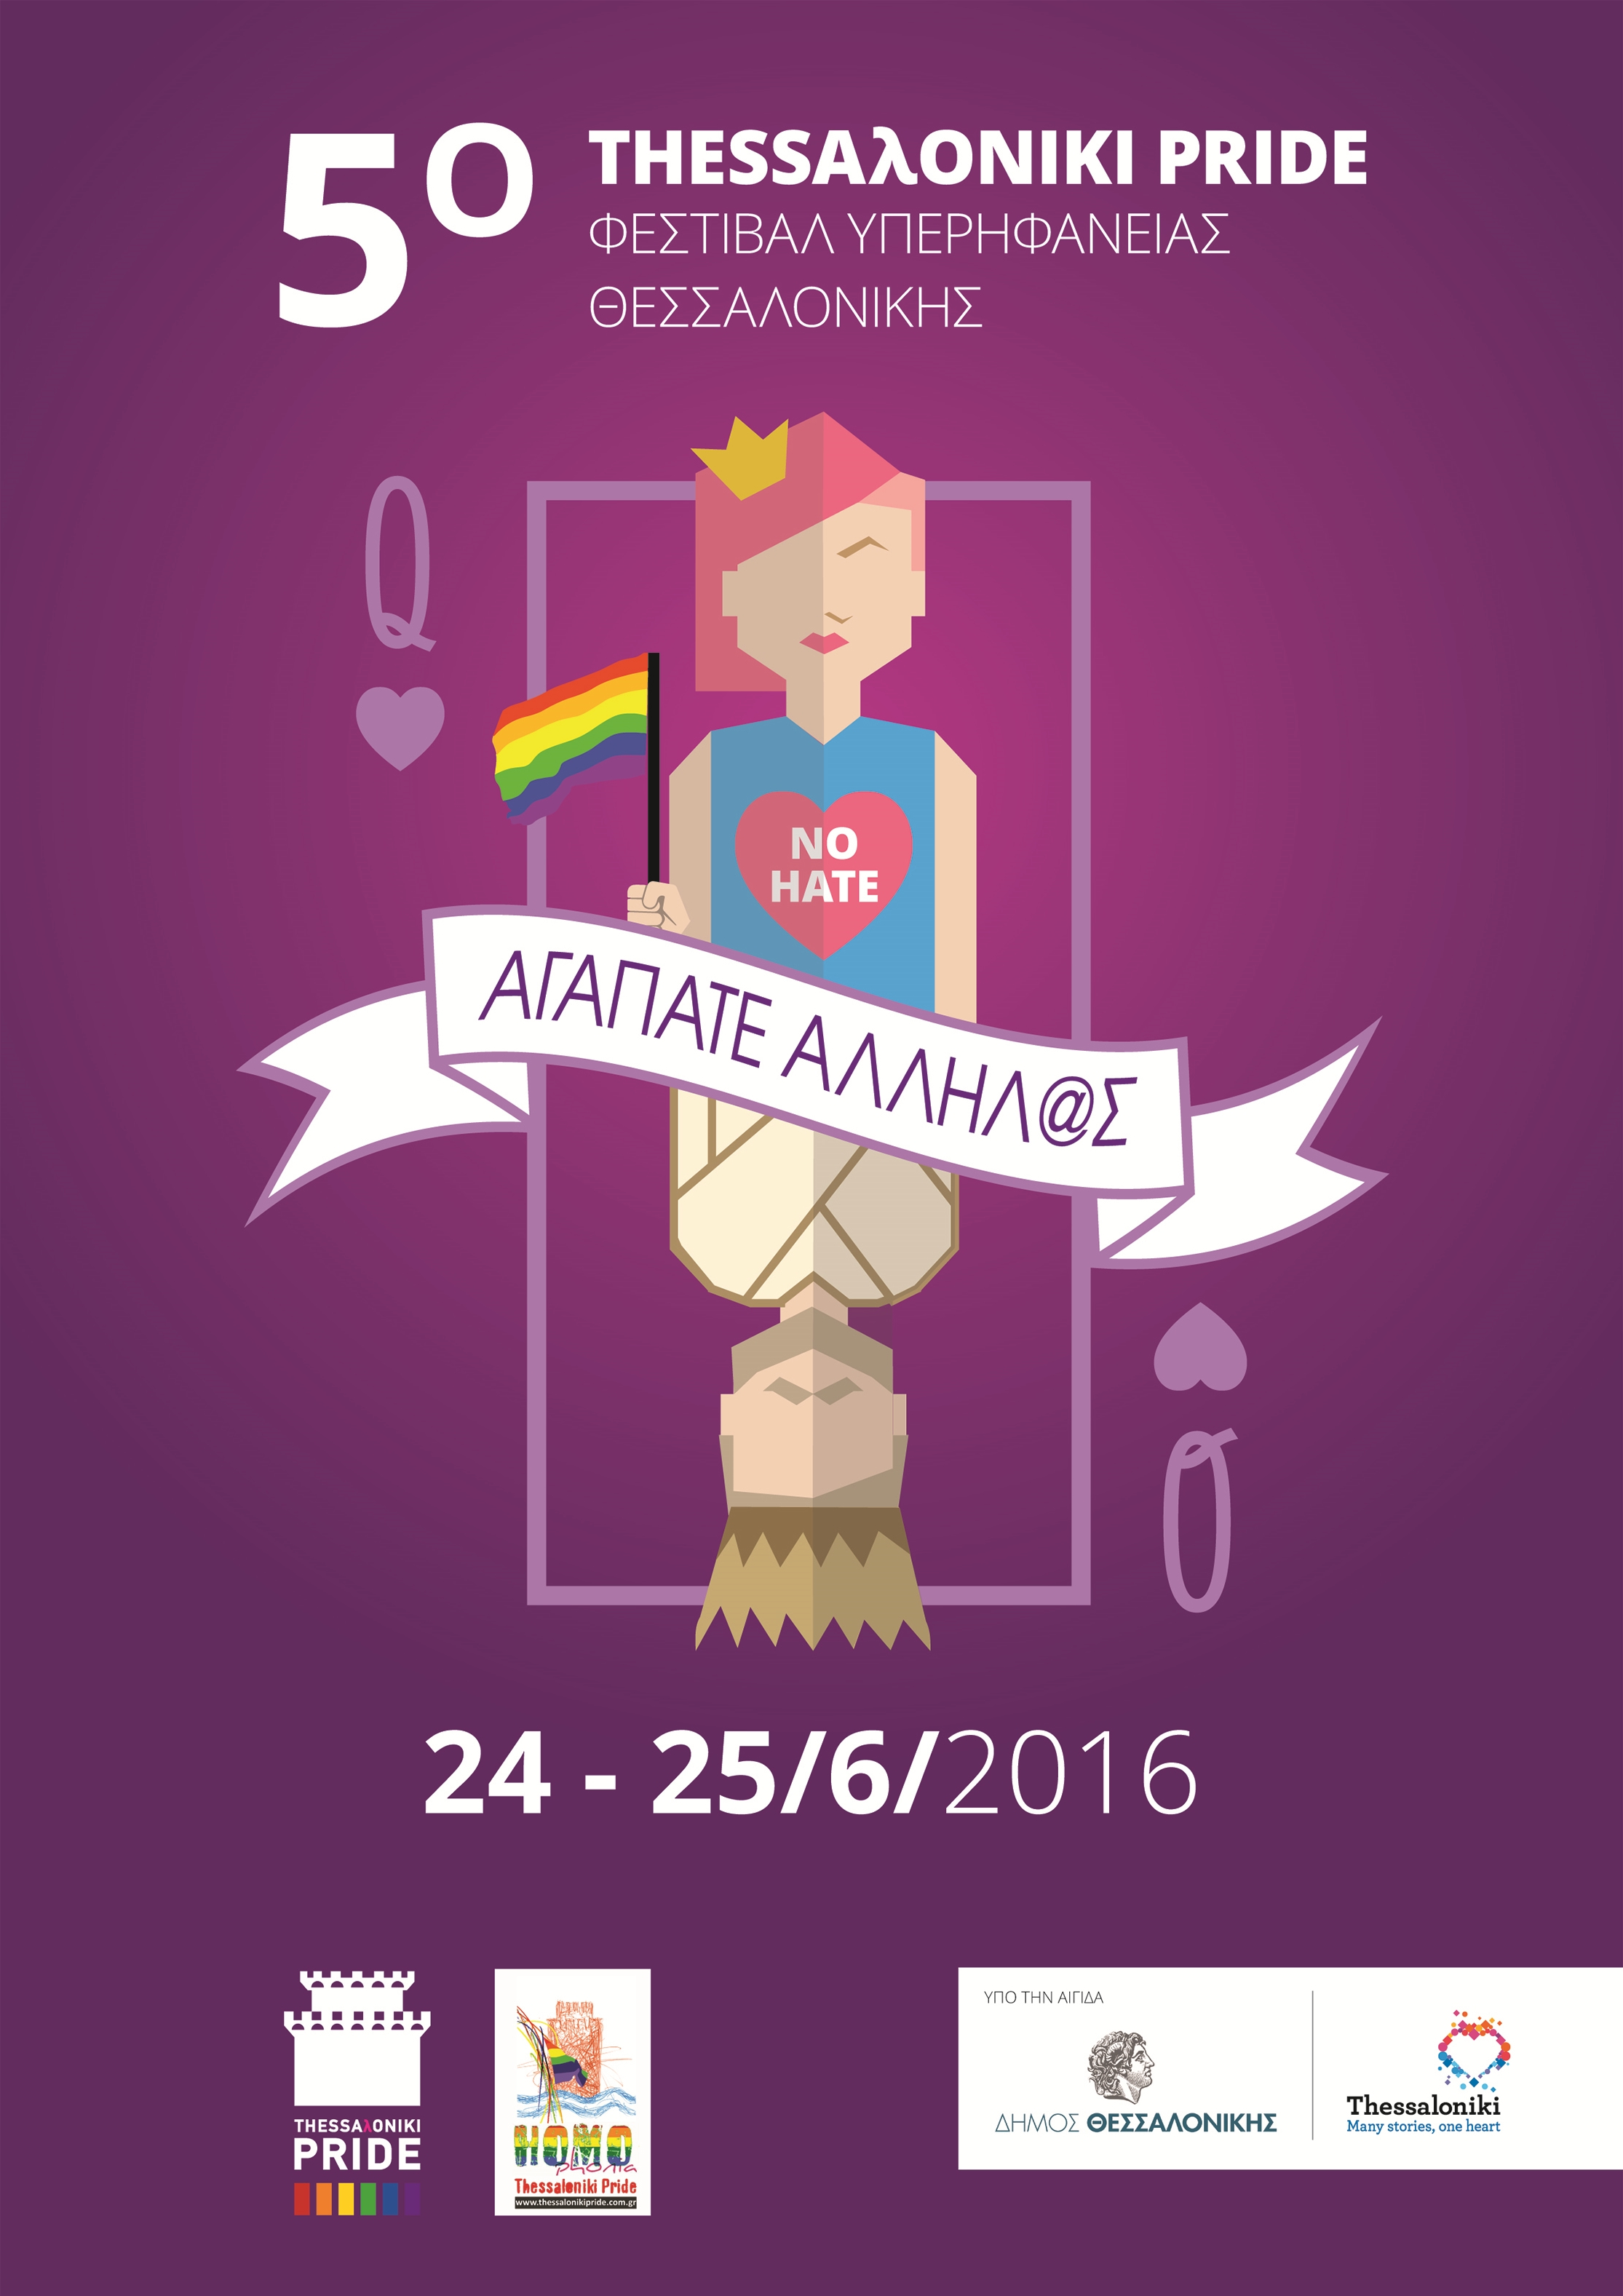 Η «Homophonia ThessalonikiPride» χαιρετίζει το 5ο Φεστιβάλ Υπερηφάνειας της πόλης